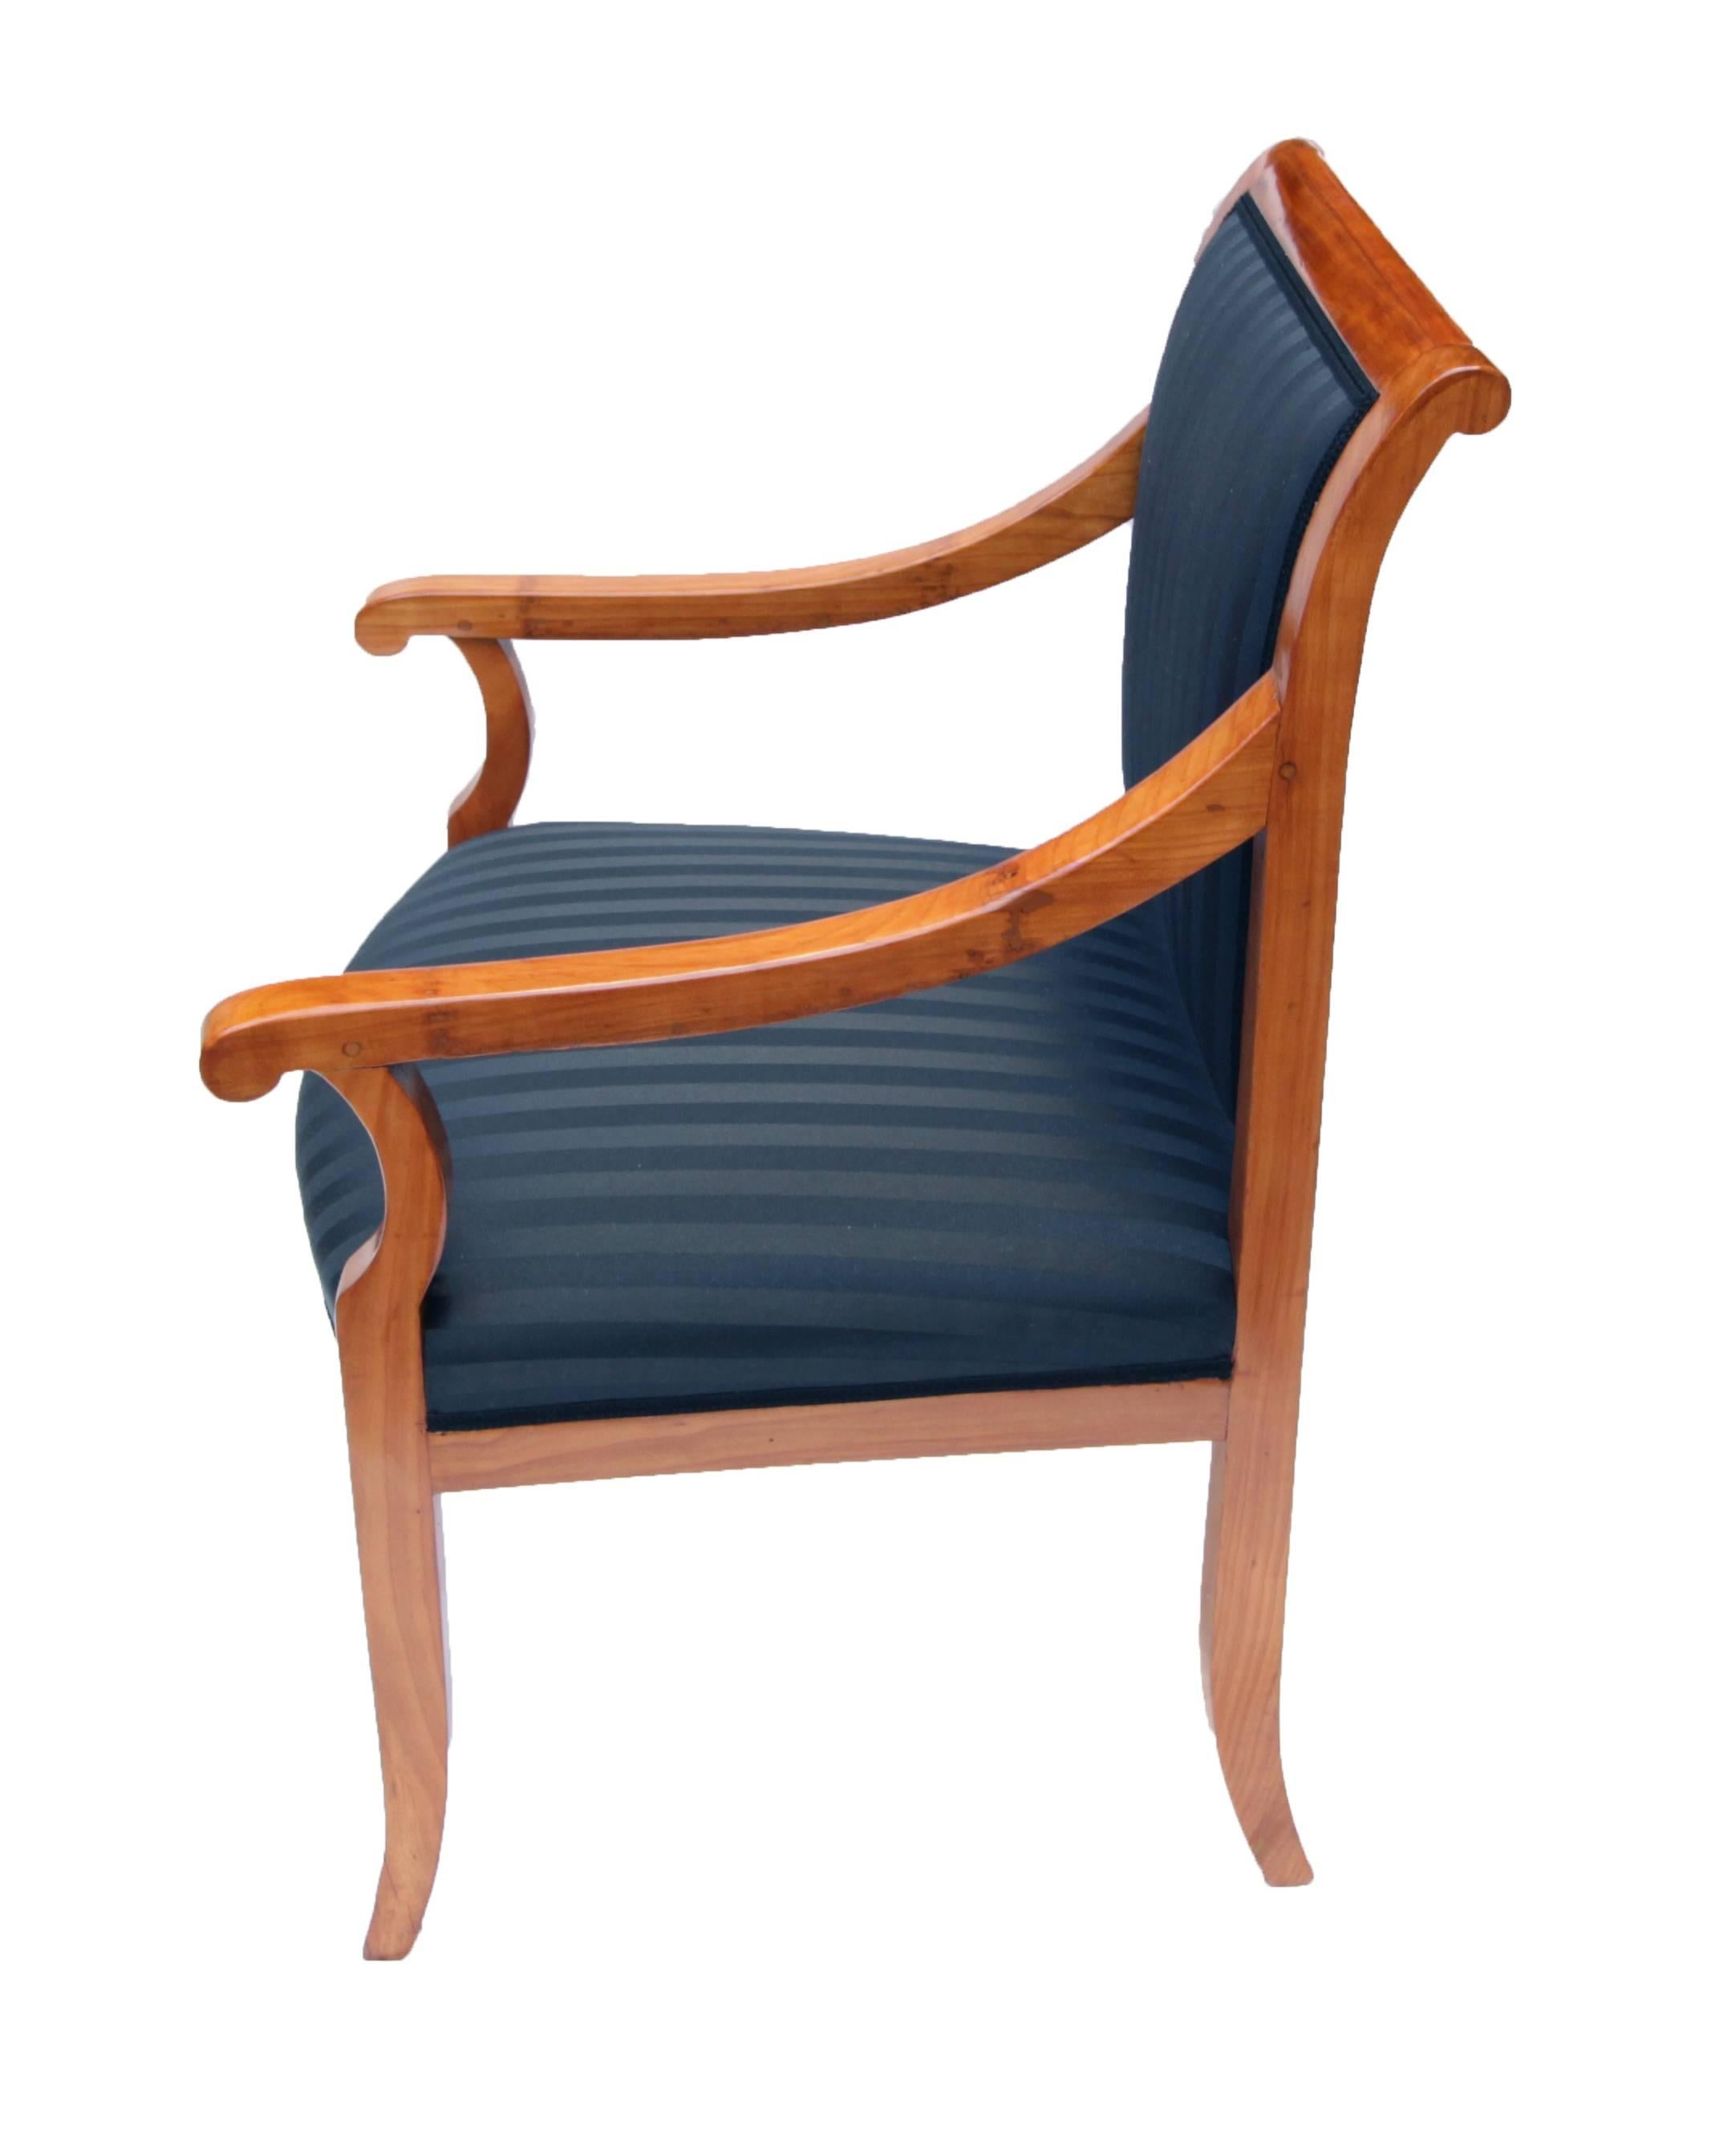 Biedermeier Sessel aus Süddeutschland, sehr guter restaurierter Zustand. Massives Kirschholz und komplett neu gepolstert.